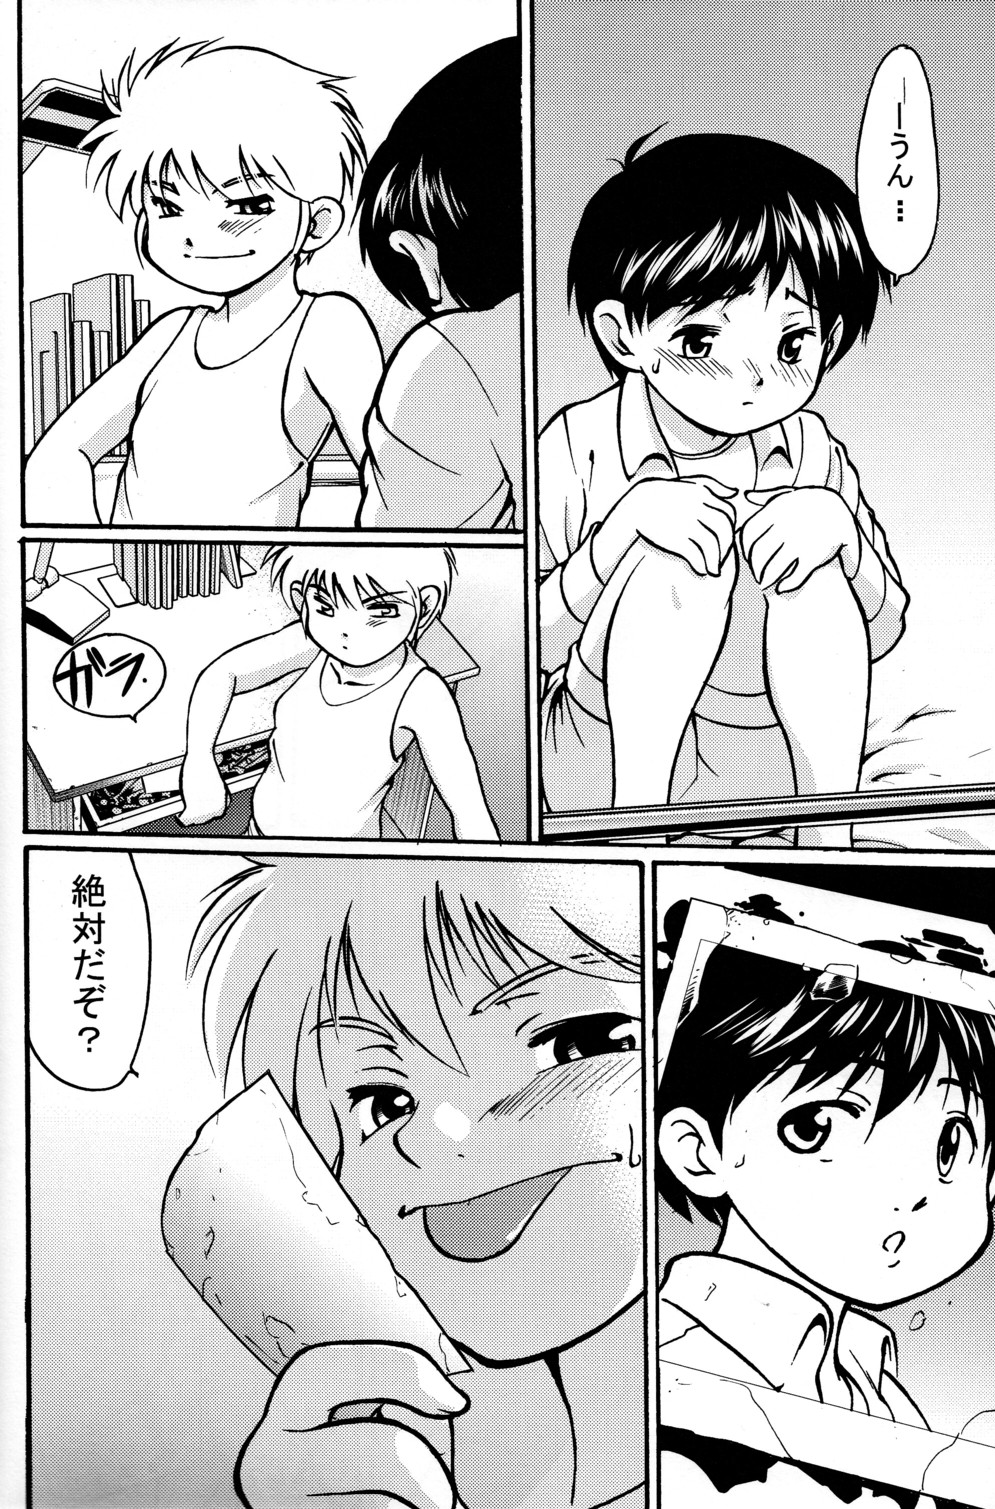 [Yuuji] Boys Life 1 page 24 full